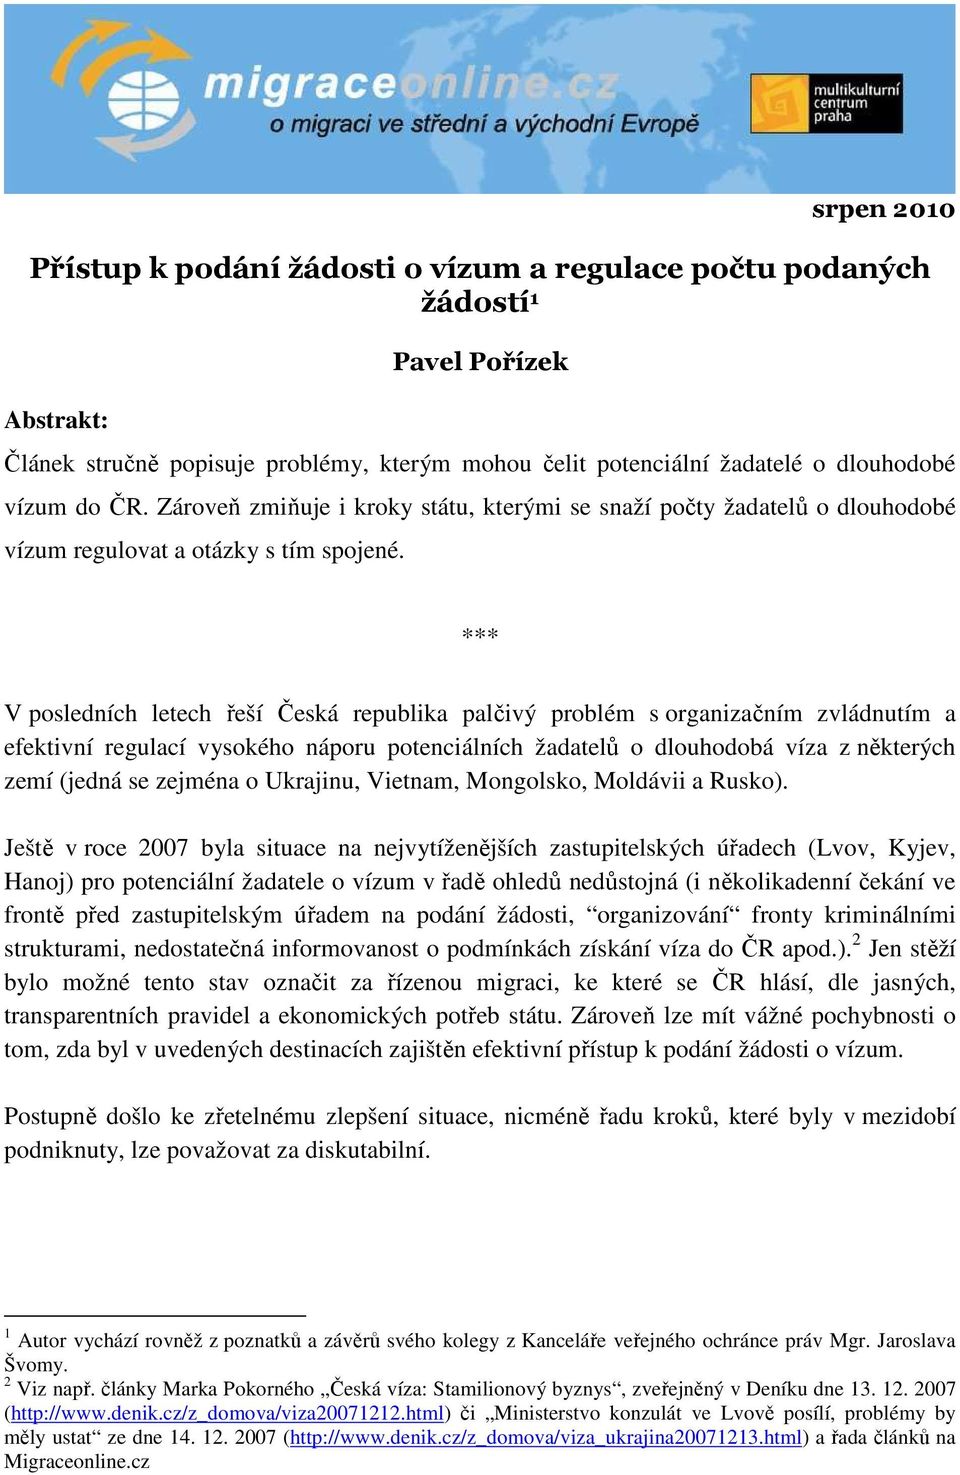 *** V posledních letech řeší Česká republika palčivý problém s organizačním zvládnutím a efektivní regulací vysokého náporu potenciálních žadatelů o dlouhodobá víza z některých zemí (jedná se zejména